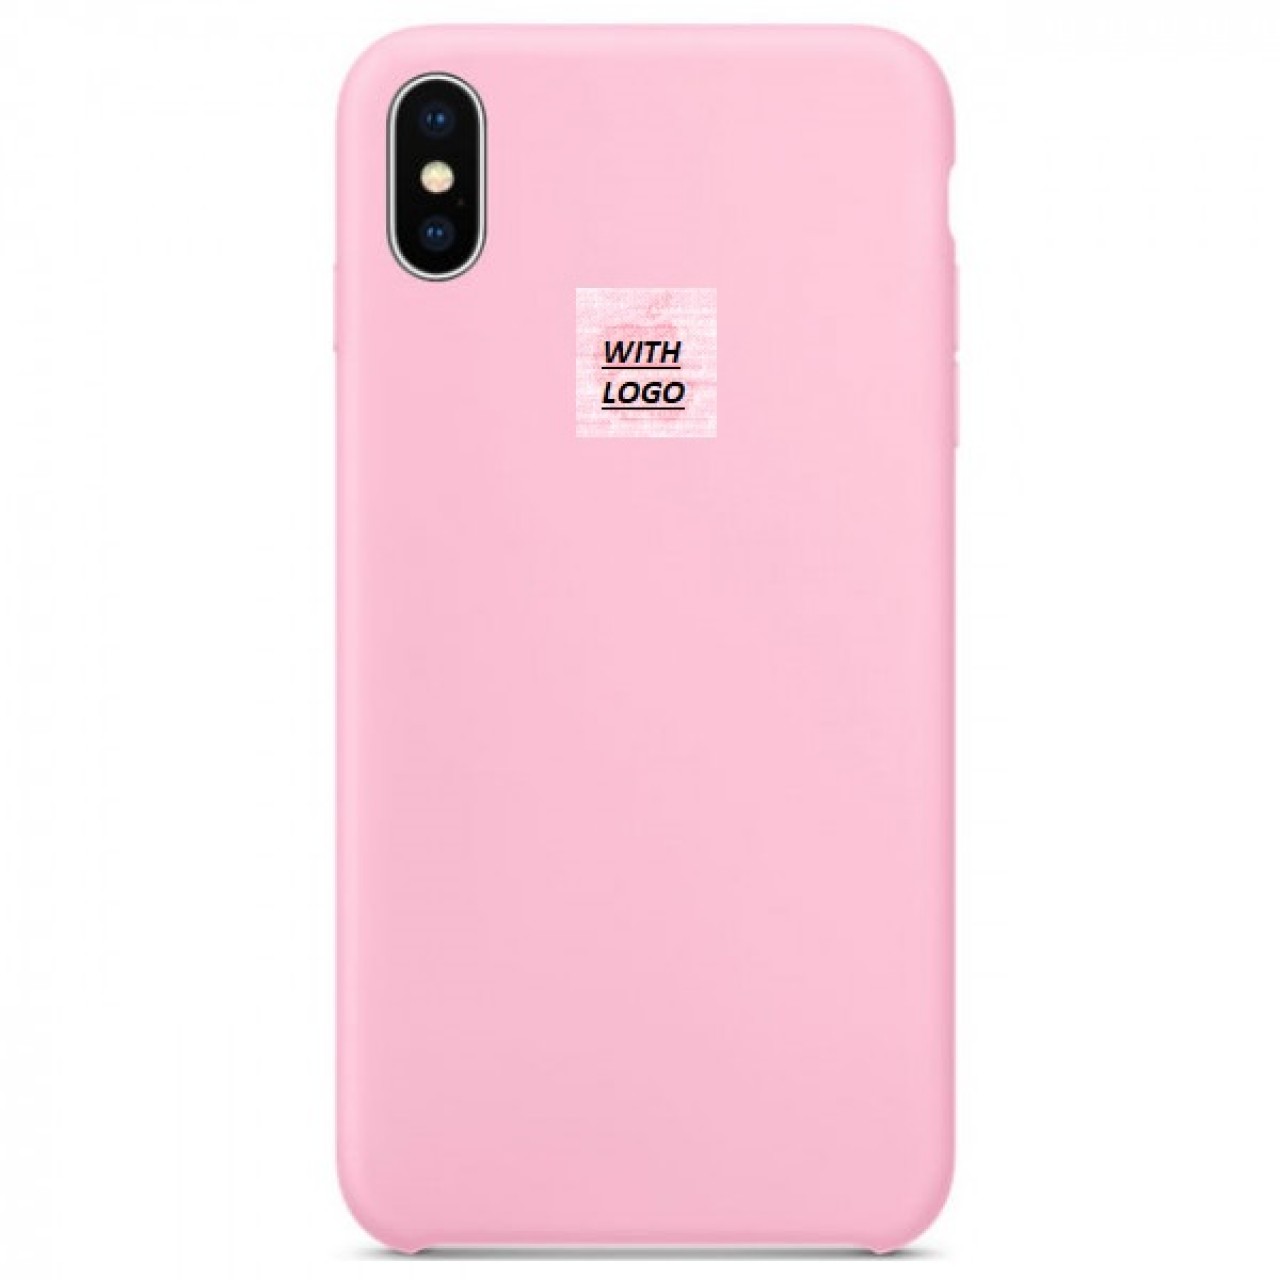 Θήκη Προστασίας Σιλικόνης iPhone XR - Back Cover Silicone Case - Rose